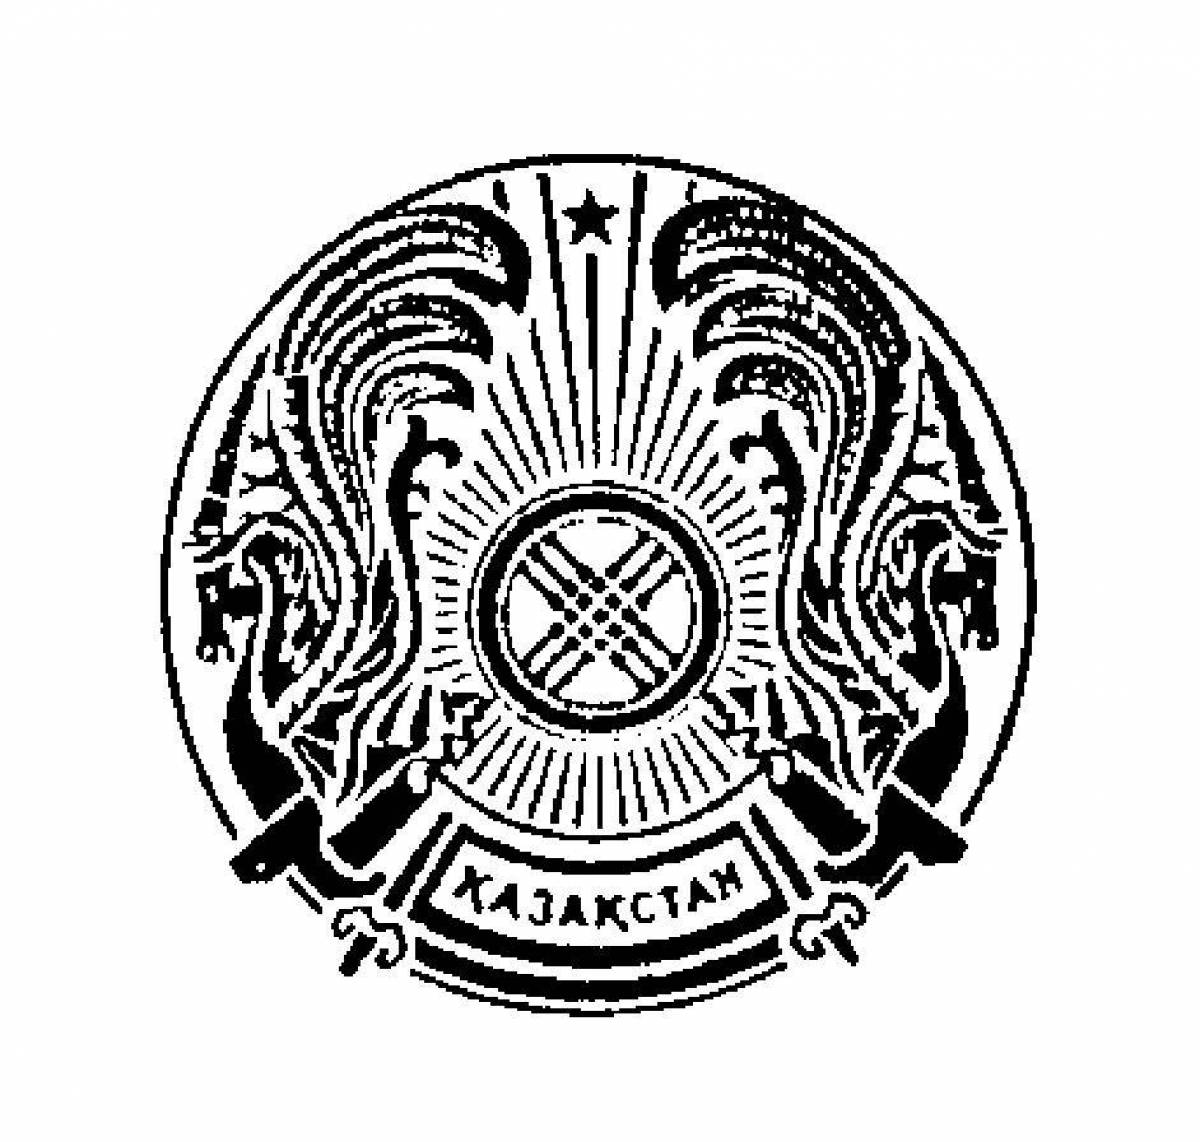 Старый герб Казахстана